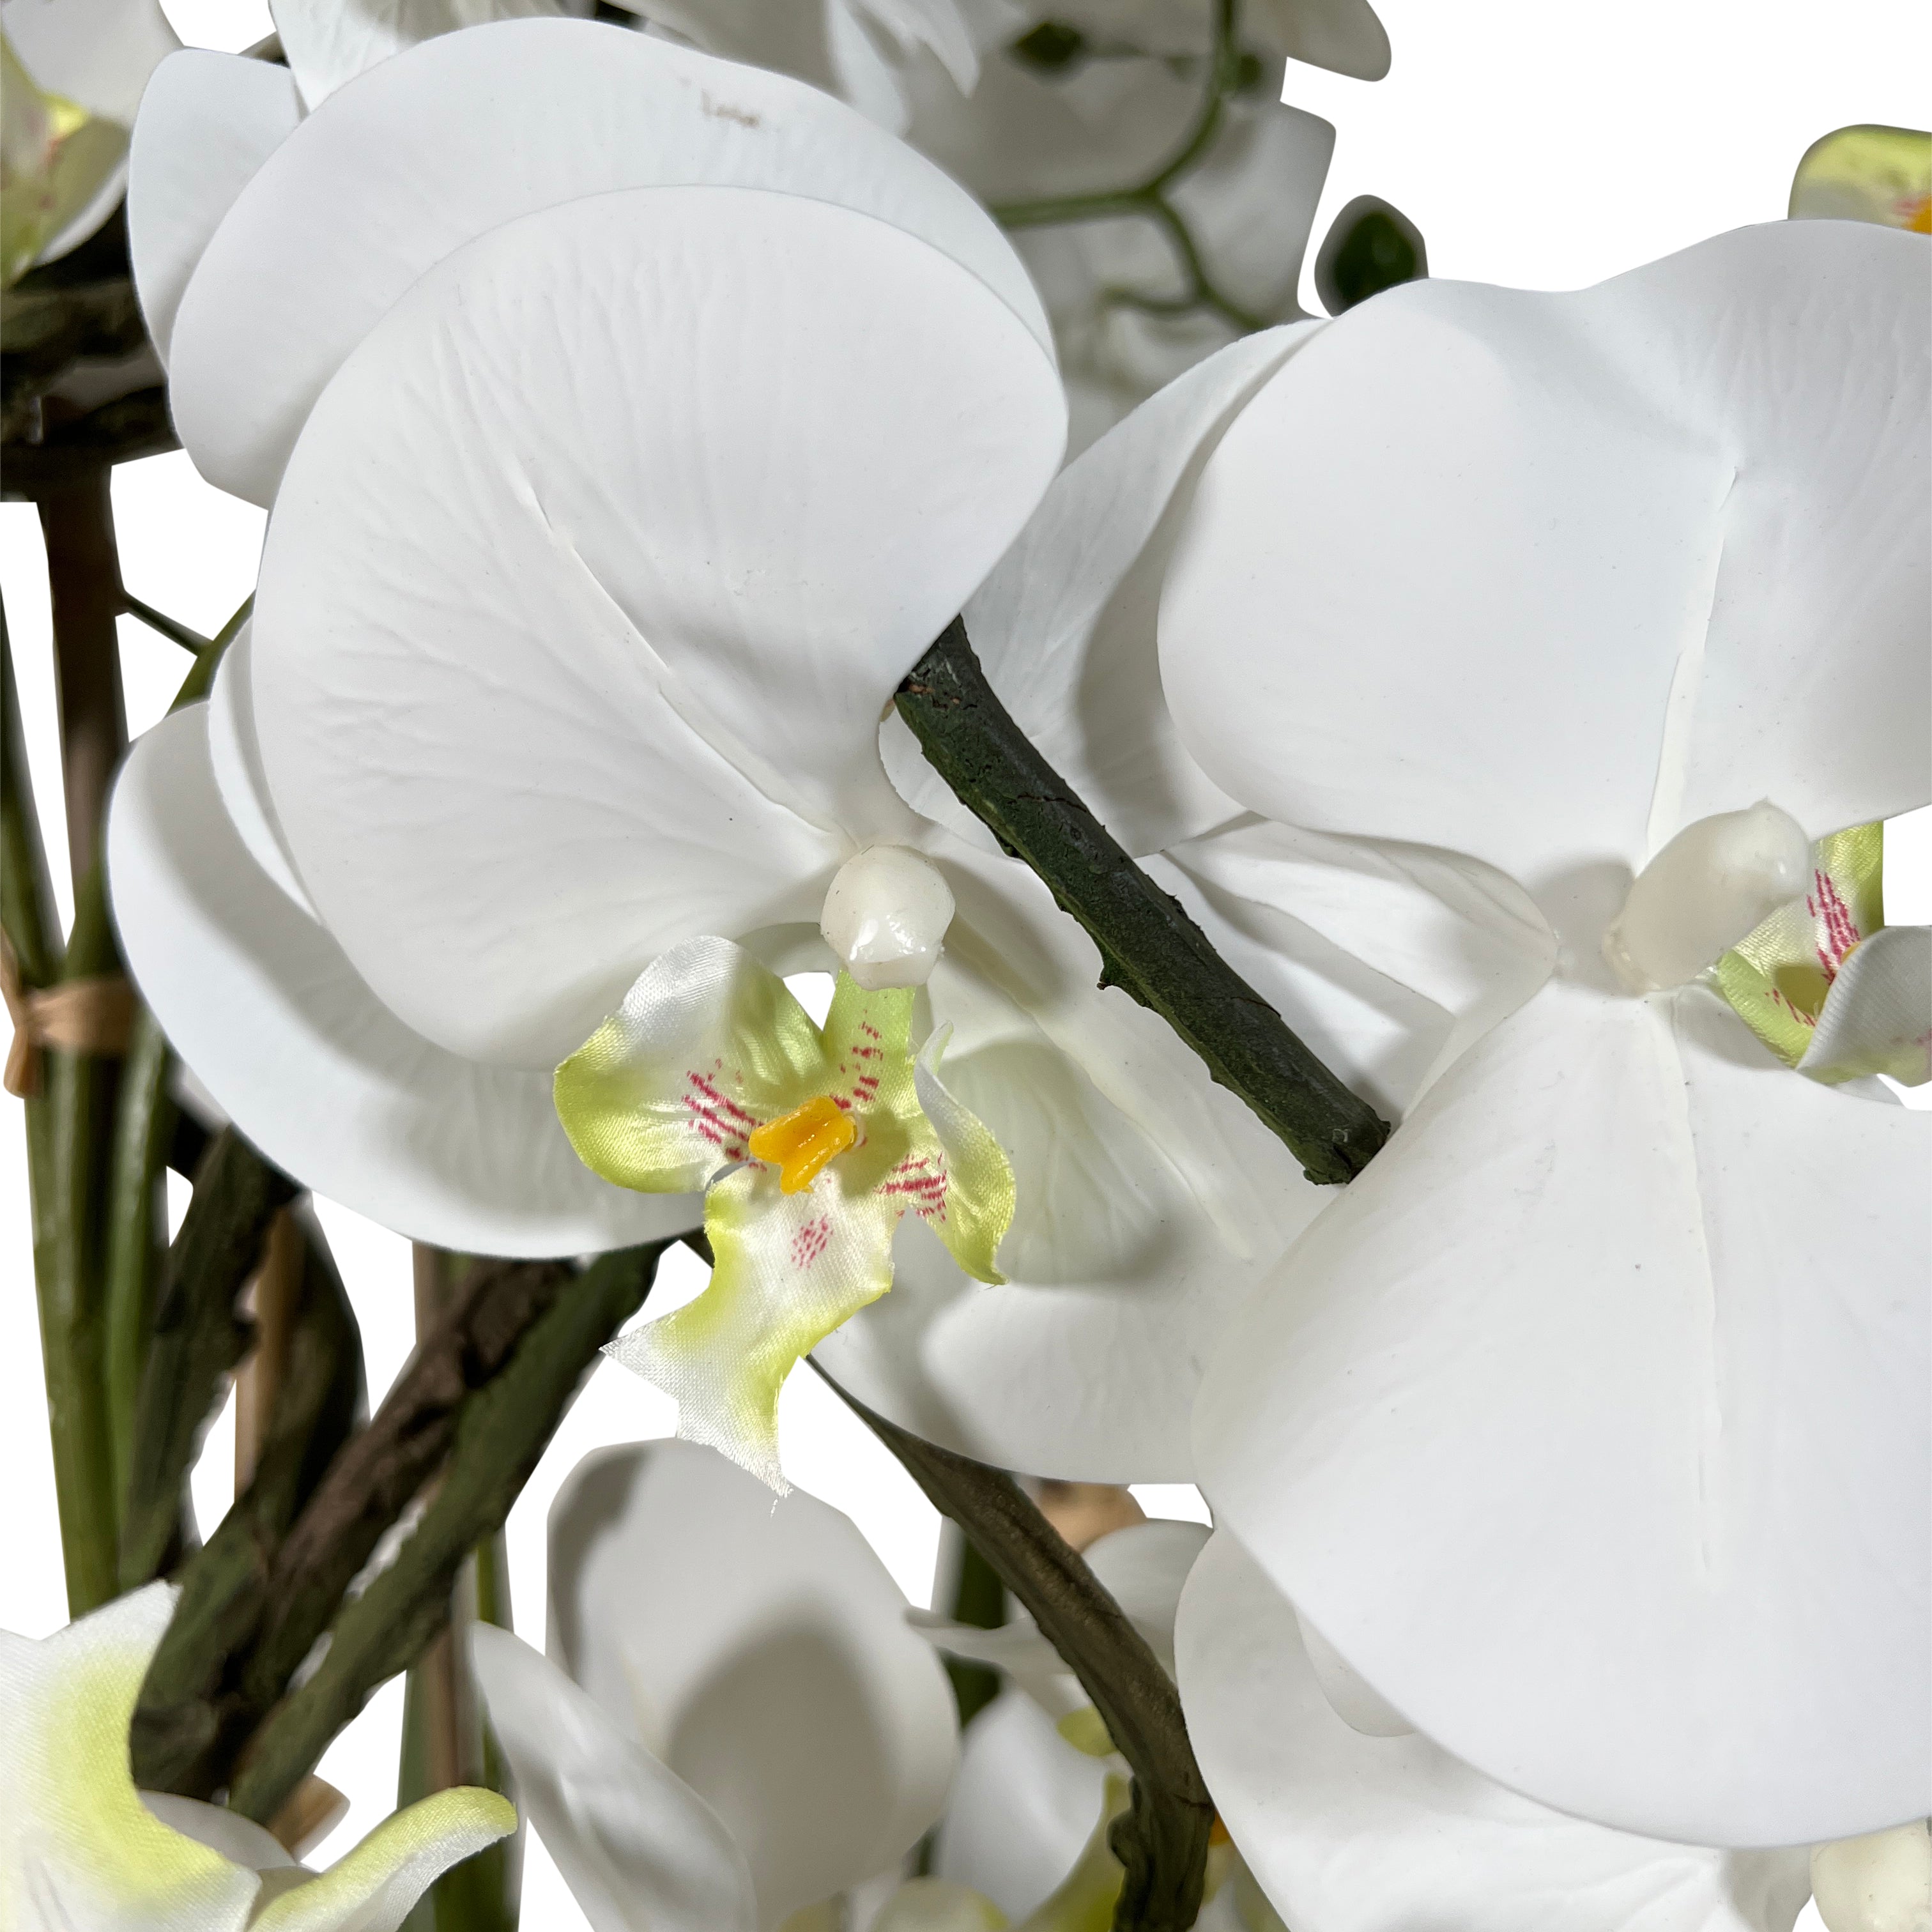 Kopu® Kunstplant Orchidee 160 cm Wit in Hoge Bloempot - Phalaenopsis